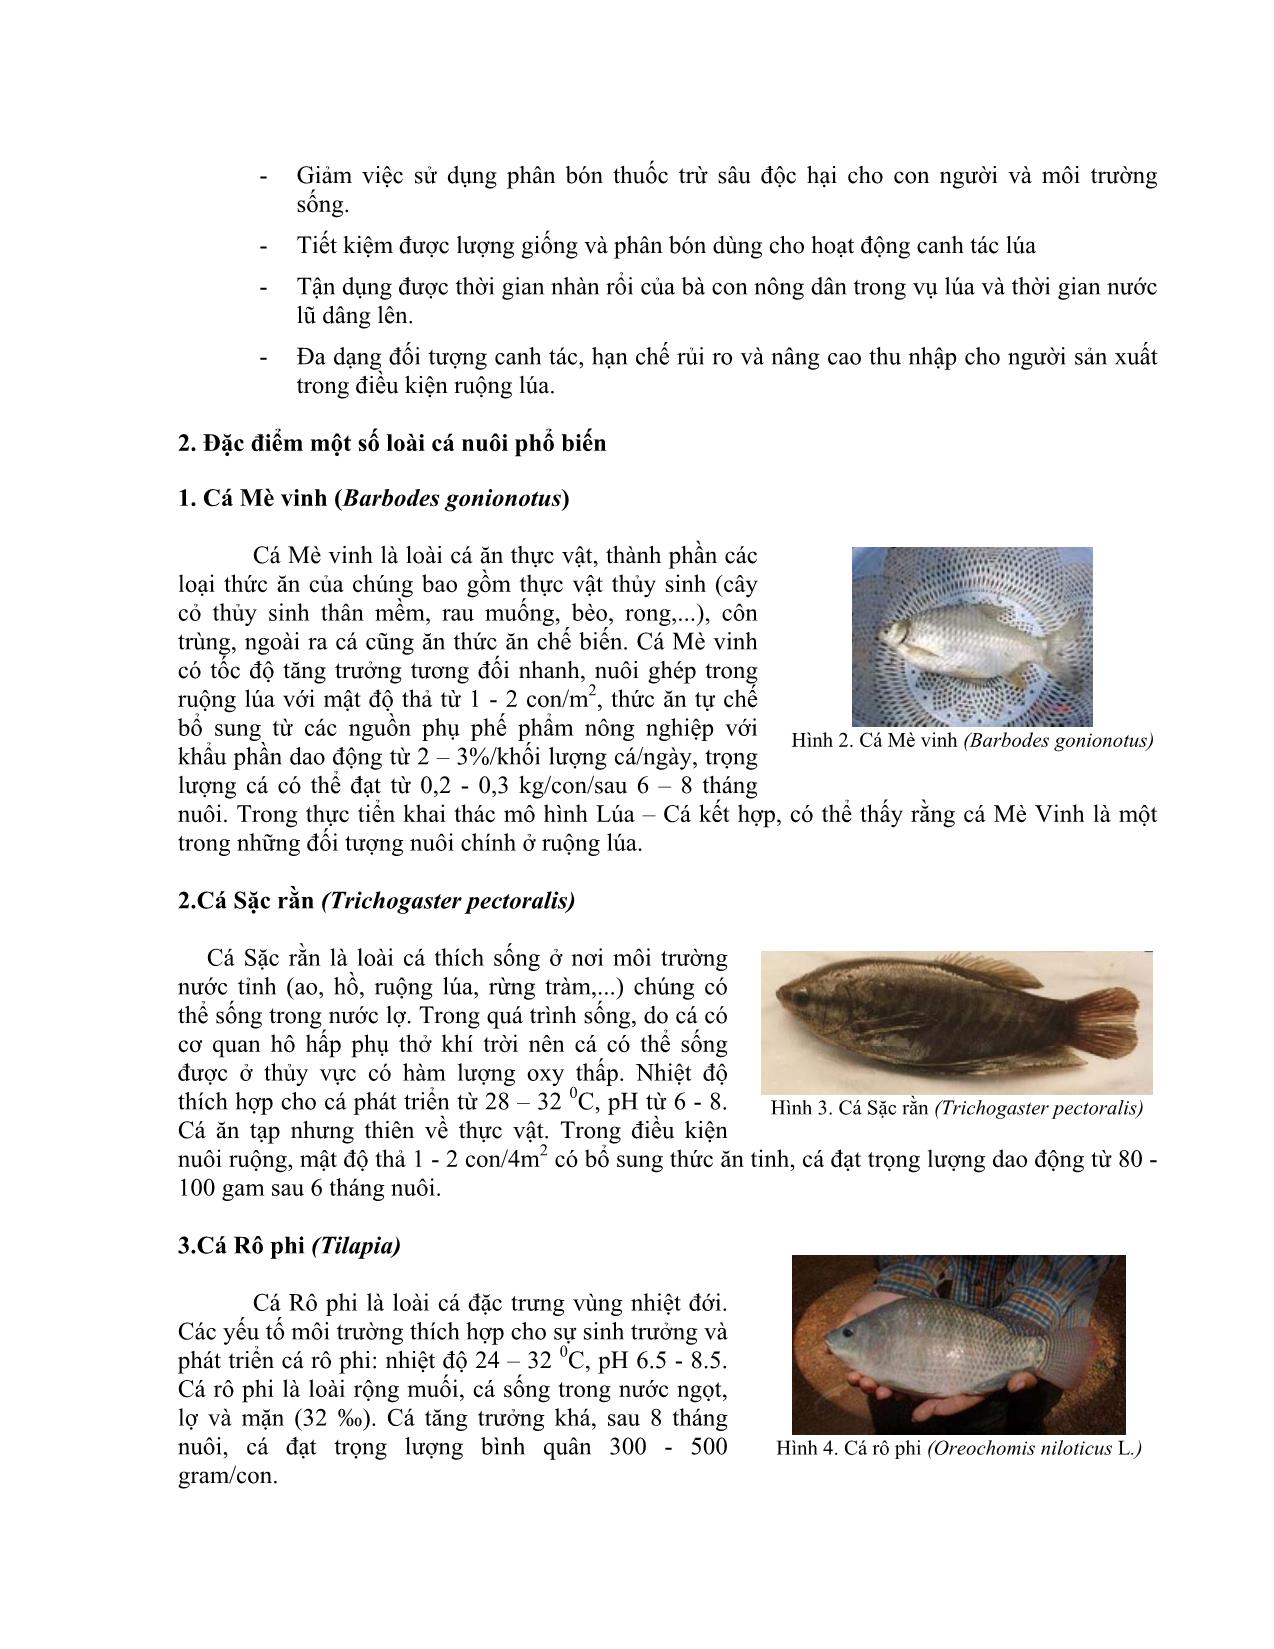 Kỹ thuật nuôi ghép trong các mô hình nuôi cá kết hợp trang 2